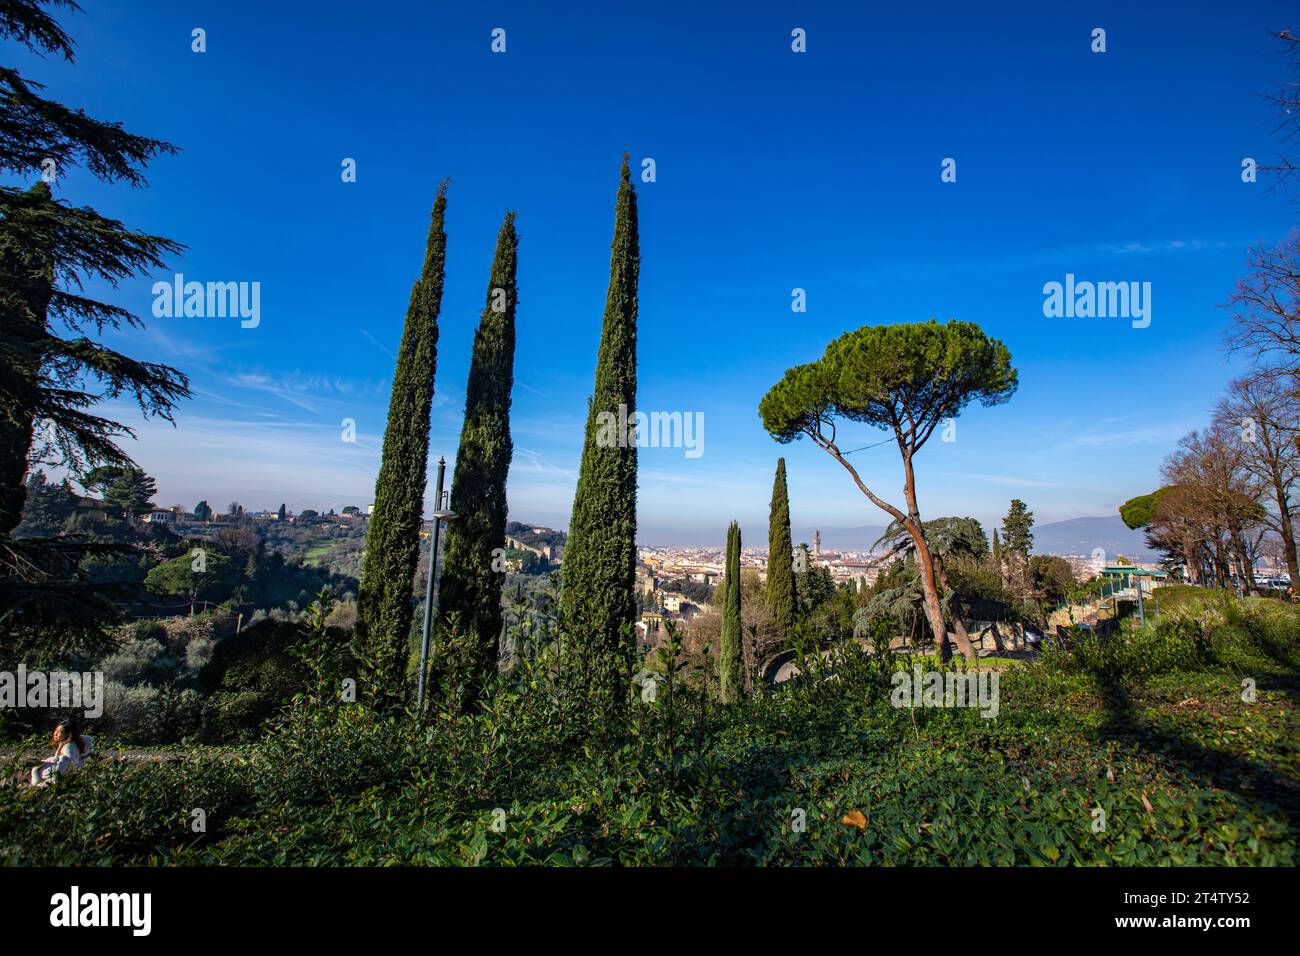 Florence, Italie : PIN de pierre dans les jardins de Boboli à Florence, la capitale de la région Toscane en Italie. Banque D'Images